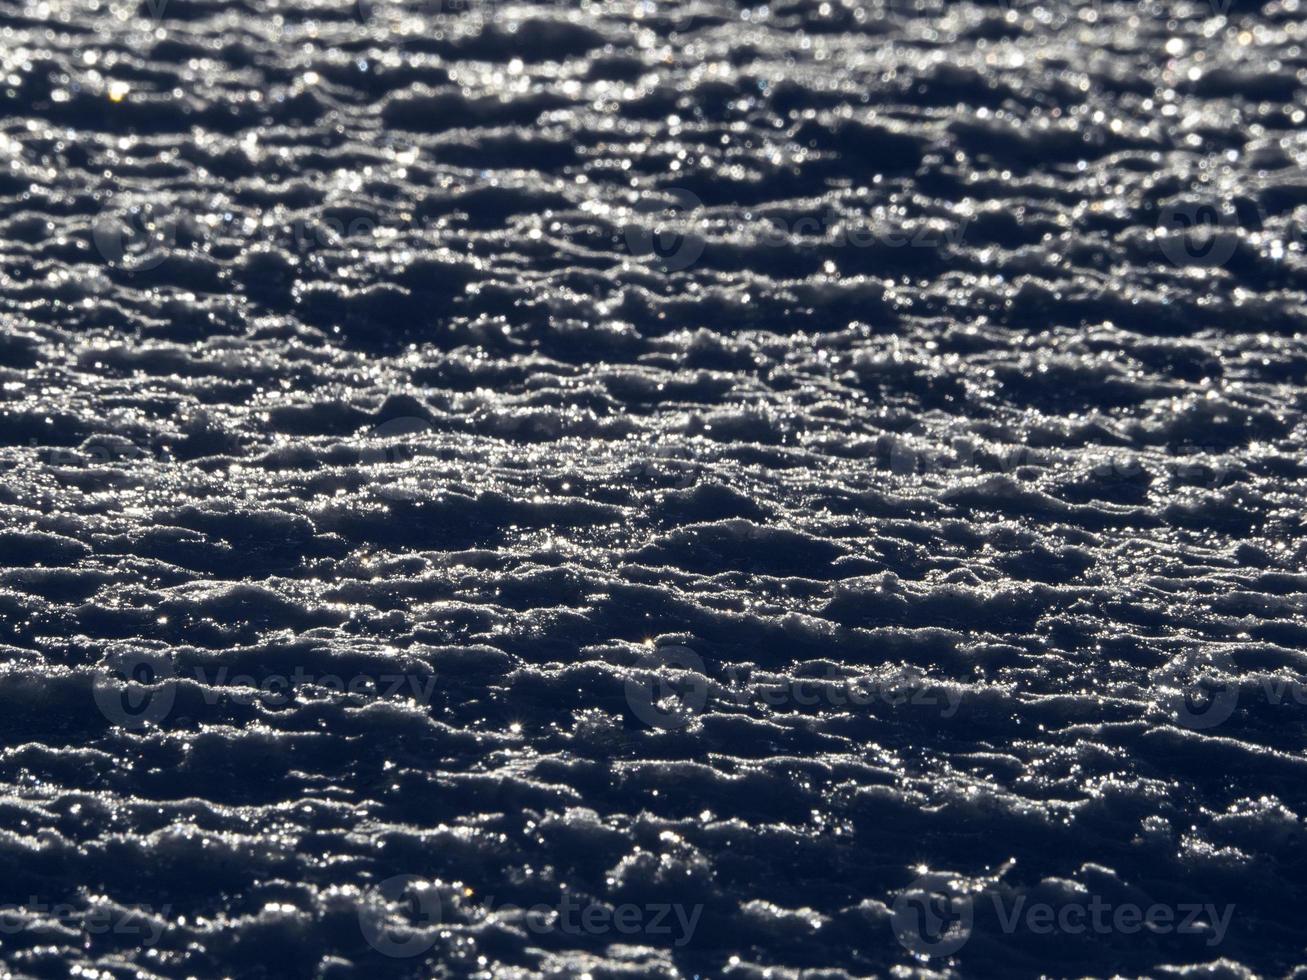 dolomiti congelato neve dettaglio su montagna foto